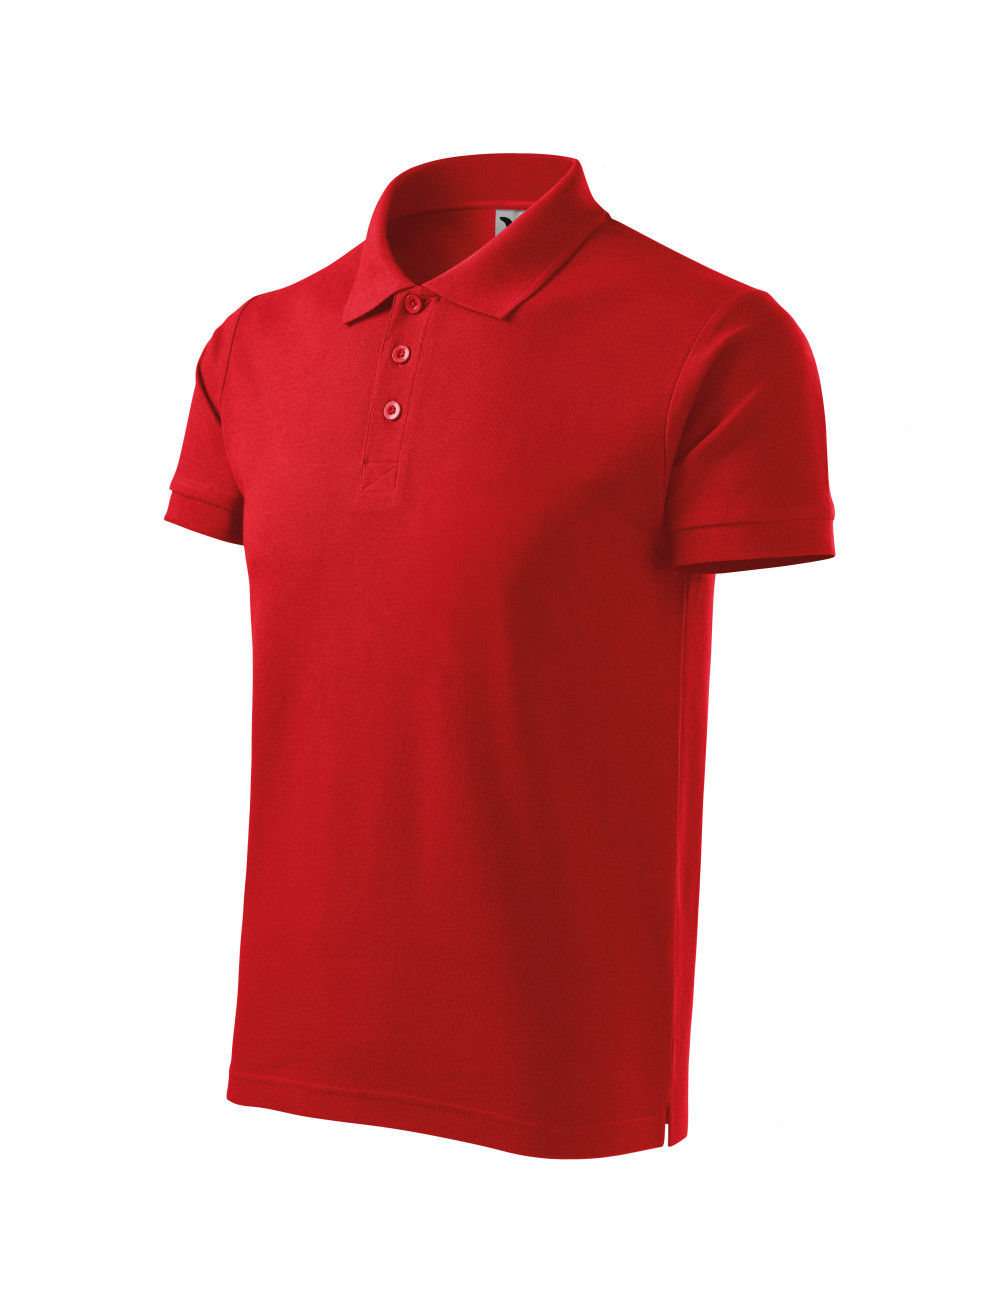 Koszulka polo męska cotton heavy 215 czerwony Adler Malfini